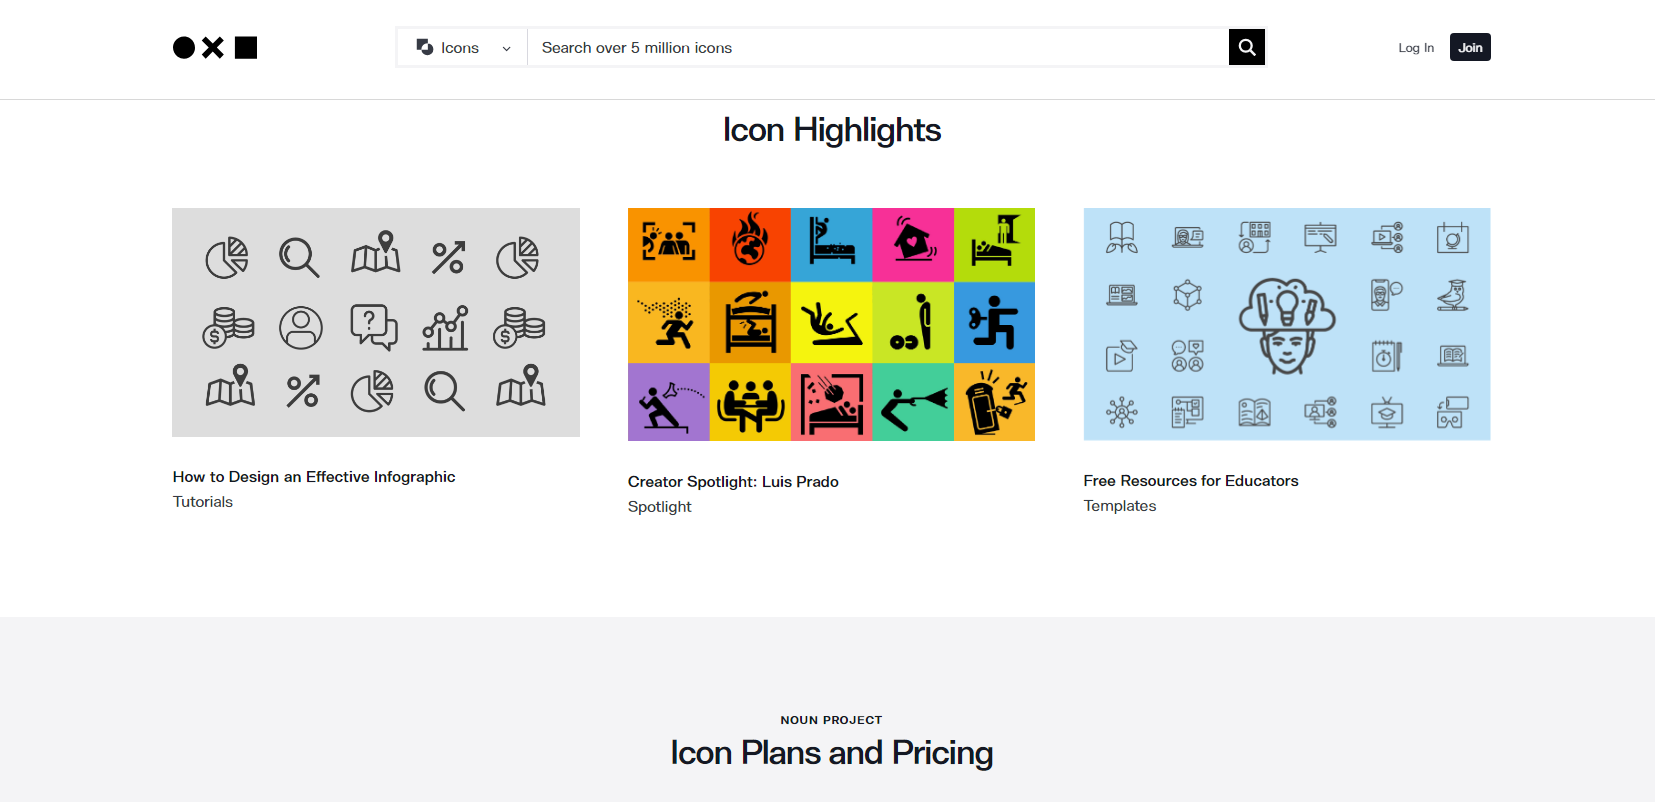 Iconos para una tienda online un elemento necesario del diseño UX